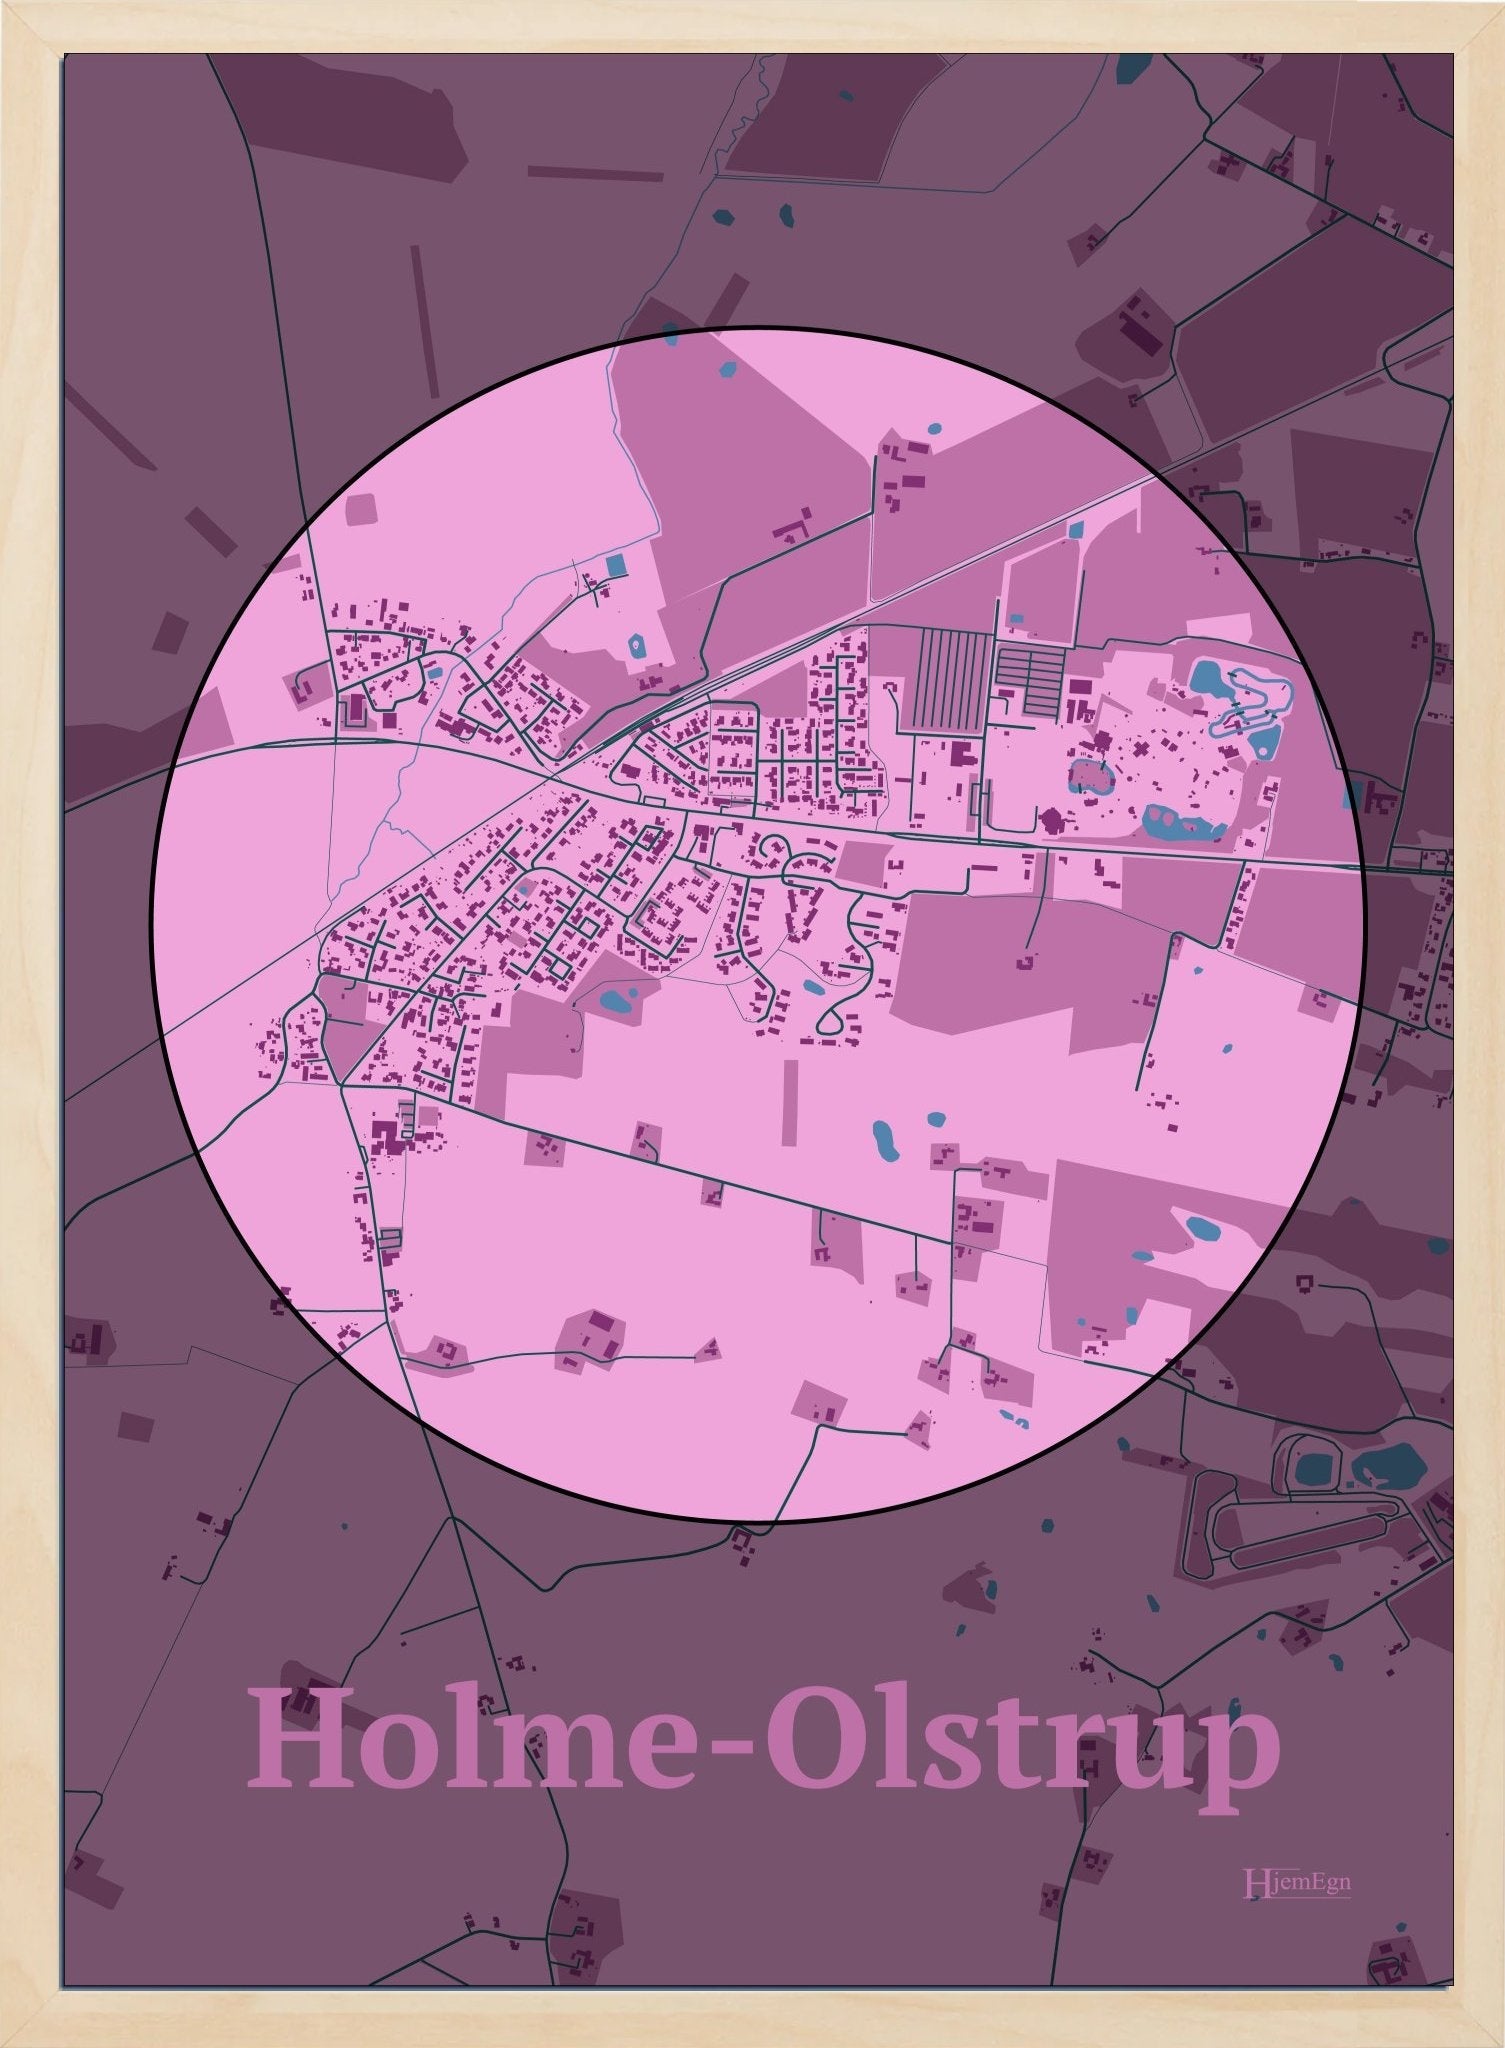 Holme-olstrup plakat i farve pastel rød og HjemEgn.dk design centrum. Design bykort for Holme-olstrup